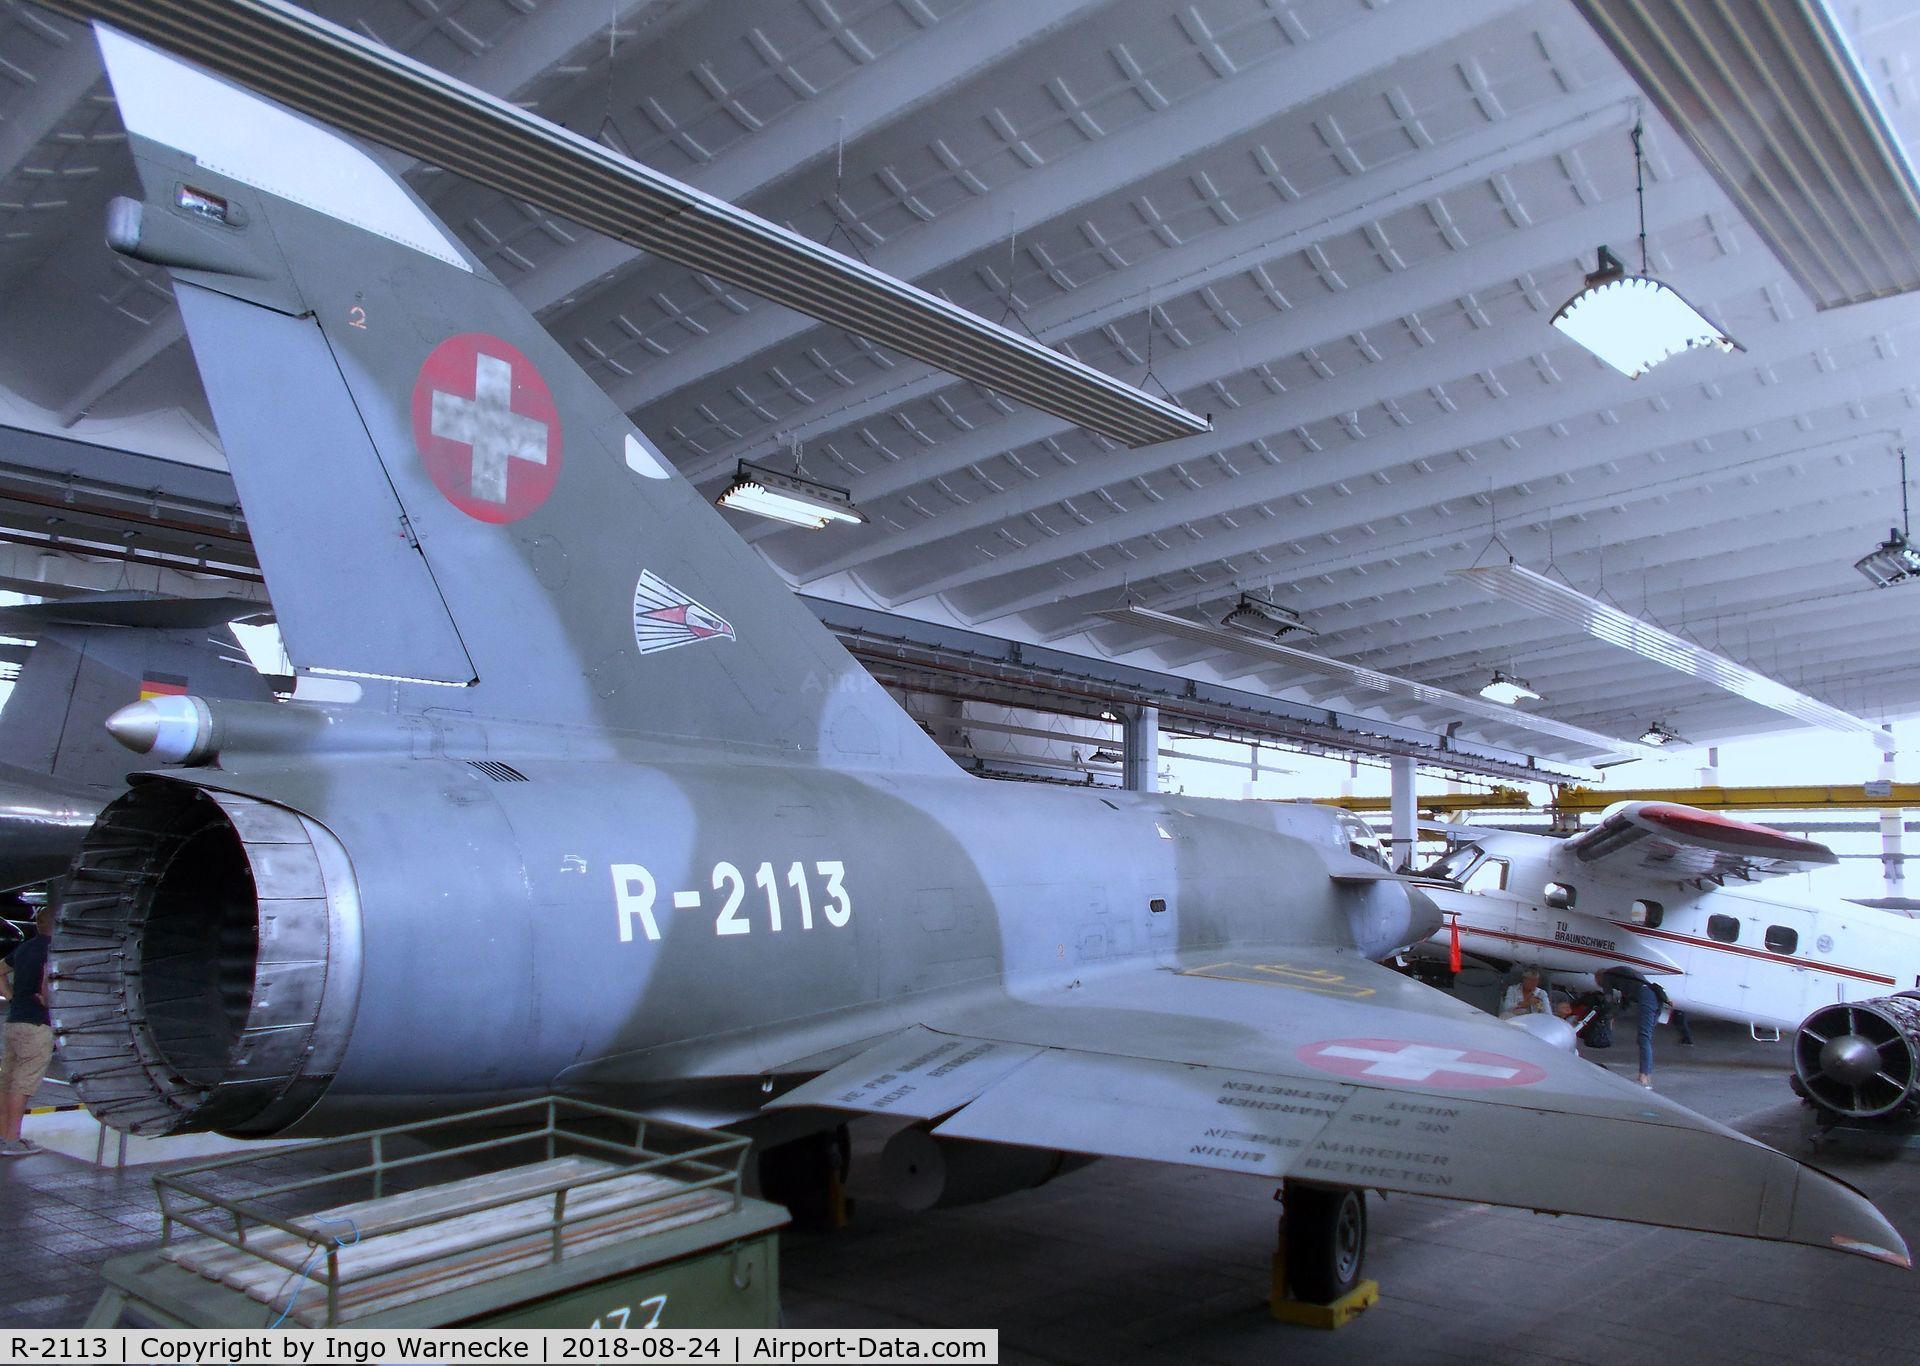 R-2113, Dassault Mirage IIIRS C/N 17-26-145/1044, Dassault Mirage III RS at the Museum für Luftfahrt u. Technik, Wernigerode